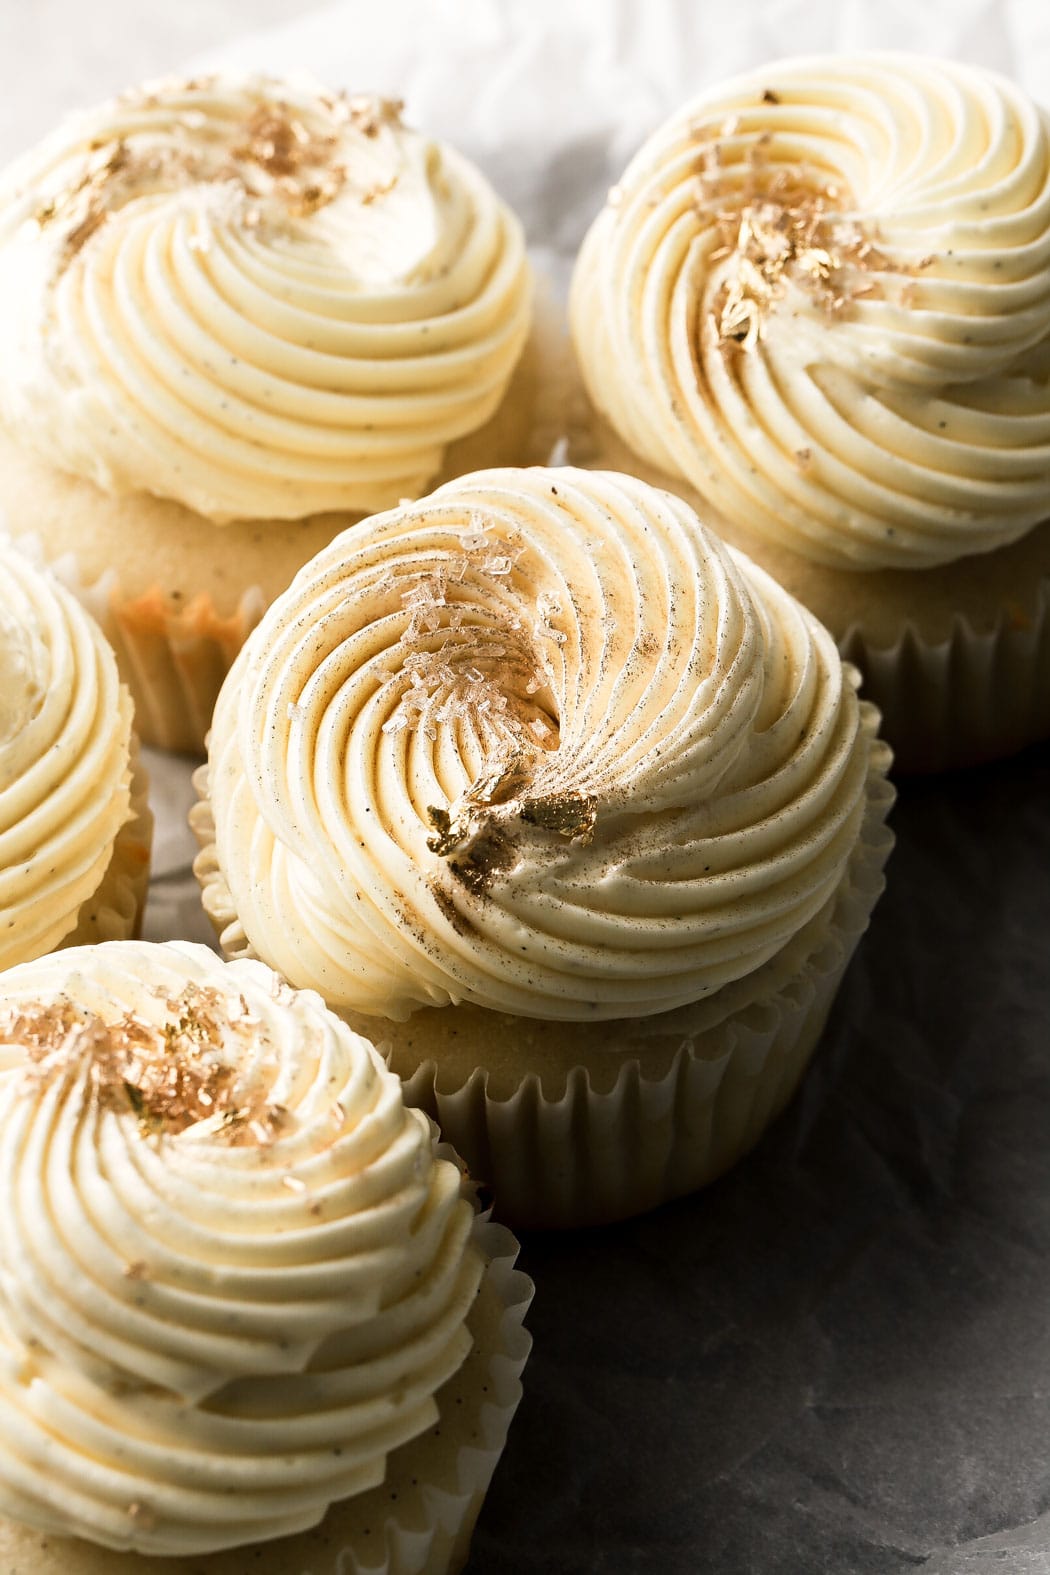 vanilla cupcakes recipe